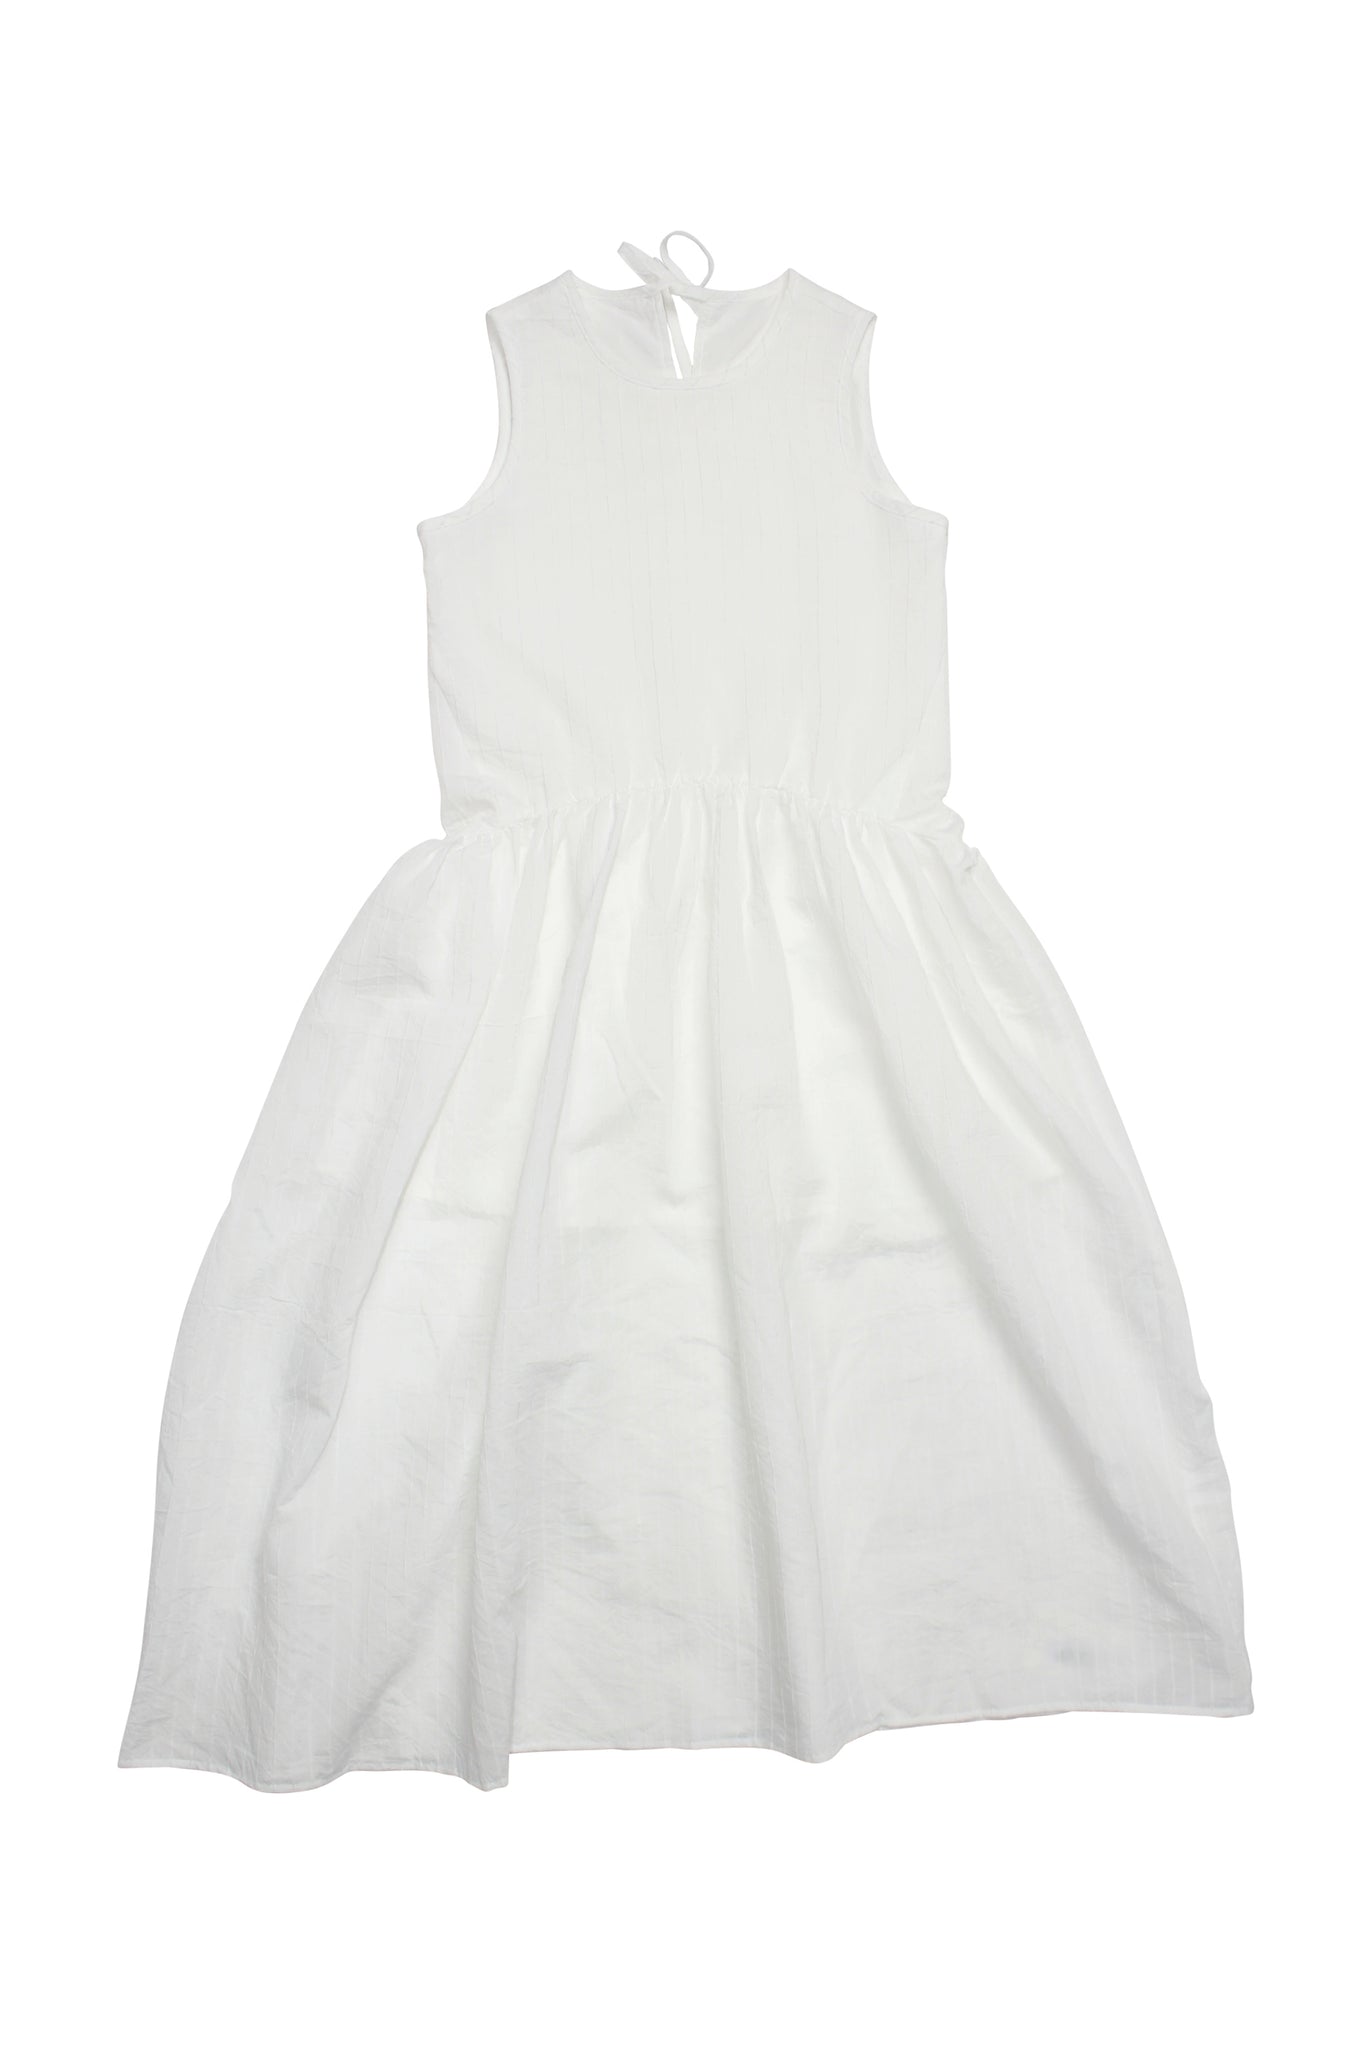 Summer Balloon Skirt Dress in White